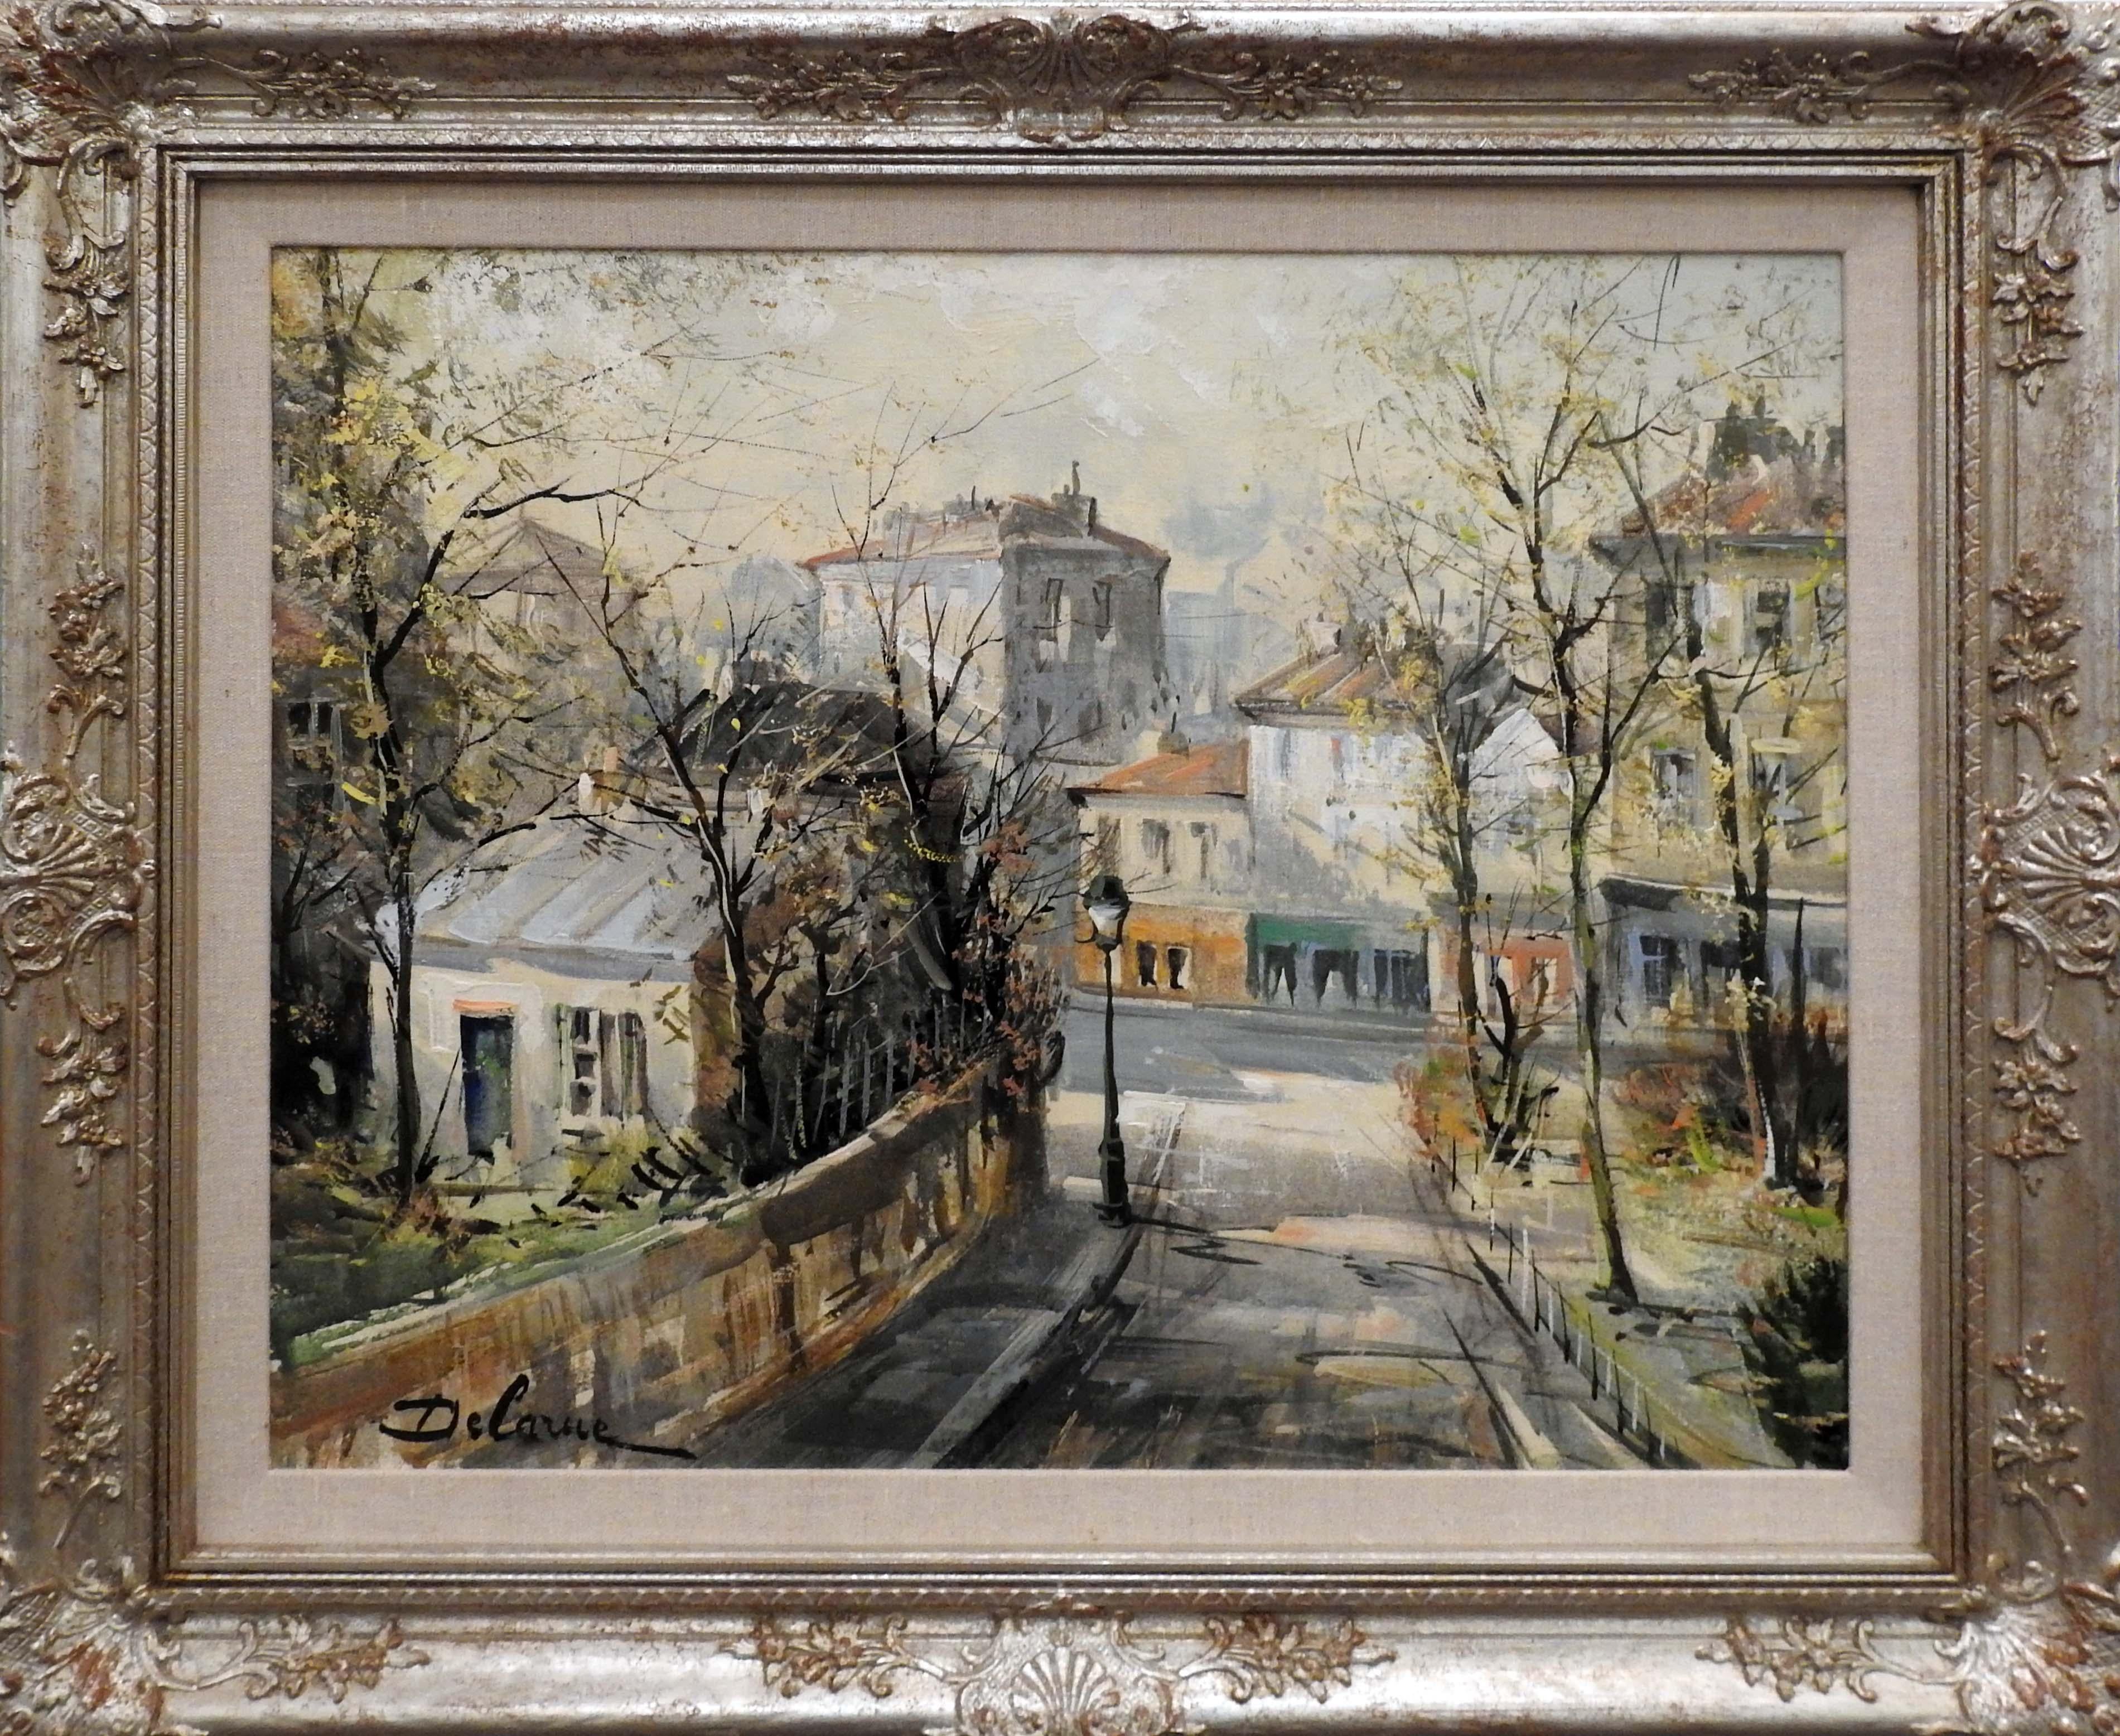 Lucien Delarue est connu dans le monde entier comme un artiste qui capture fidèlement l'ambiance romantique de Paris. Son célèbre sujet de la "rue Lepic", ainsi que d'autres scènes parisiennes, complètent ses représentations romantiques du sud de la